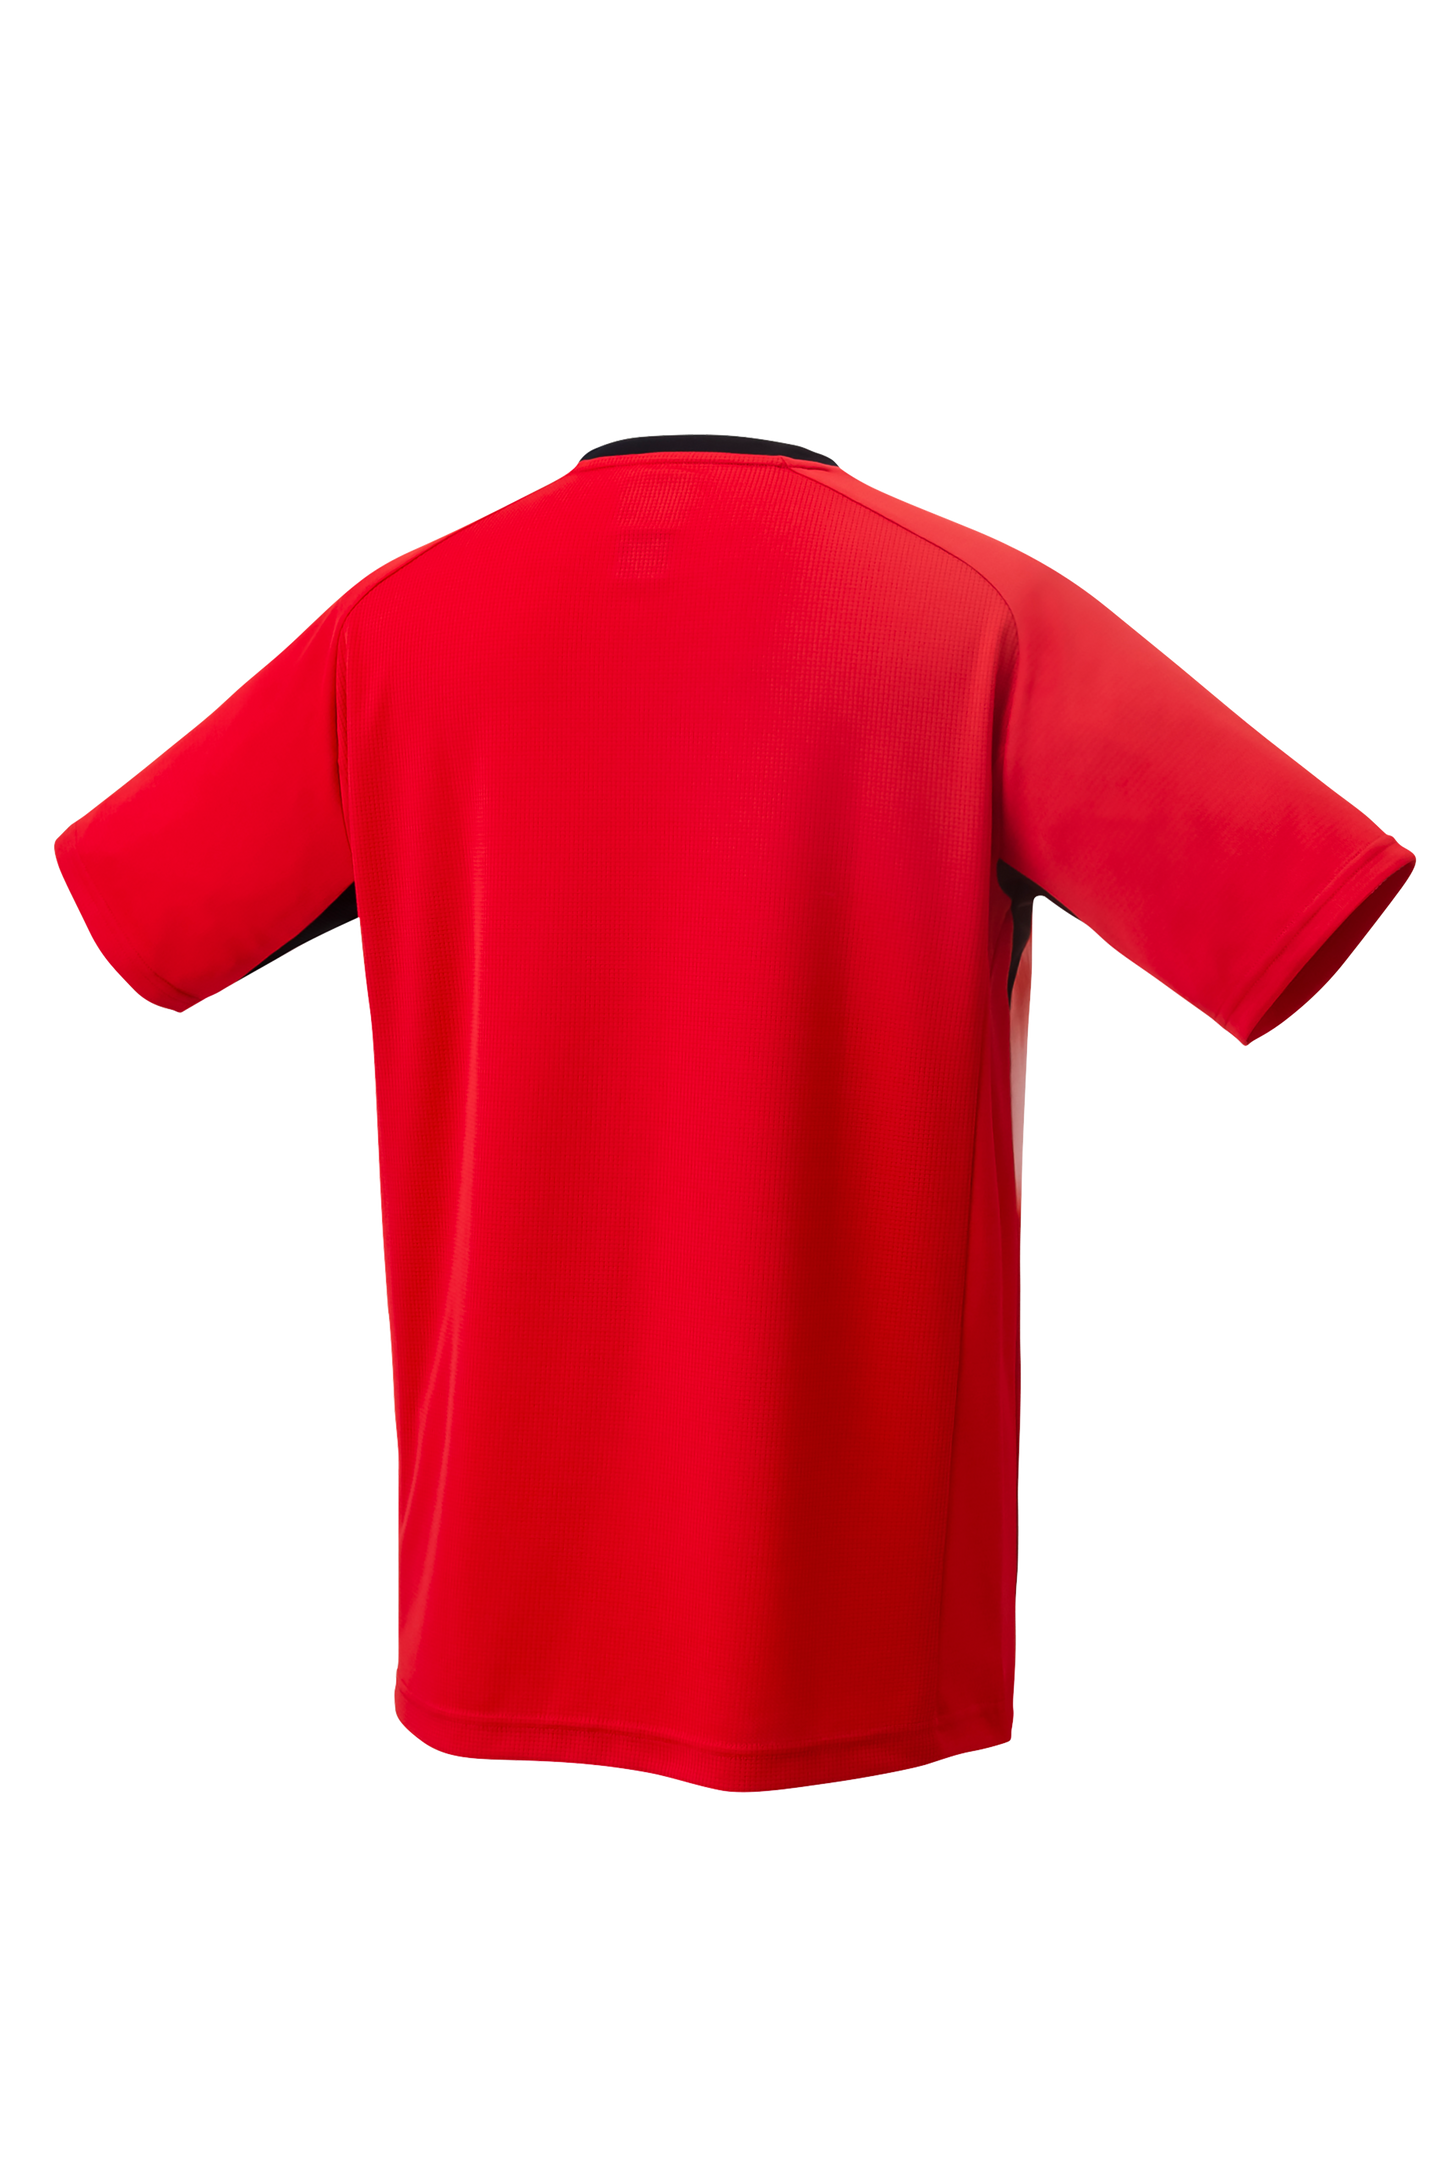 YONEX Men's Crew Neck Shirt 10477 Team Canada [Tornado Red] - Max Sports